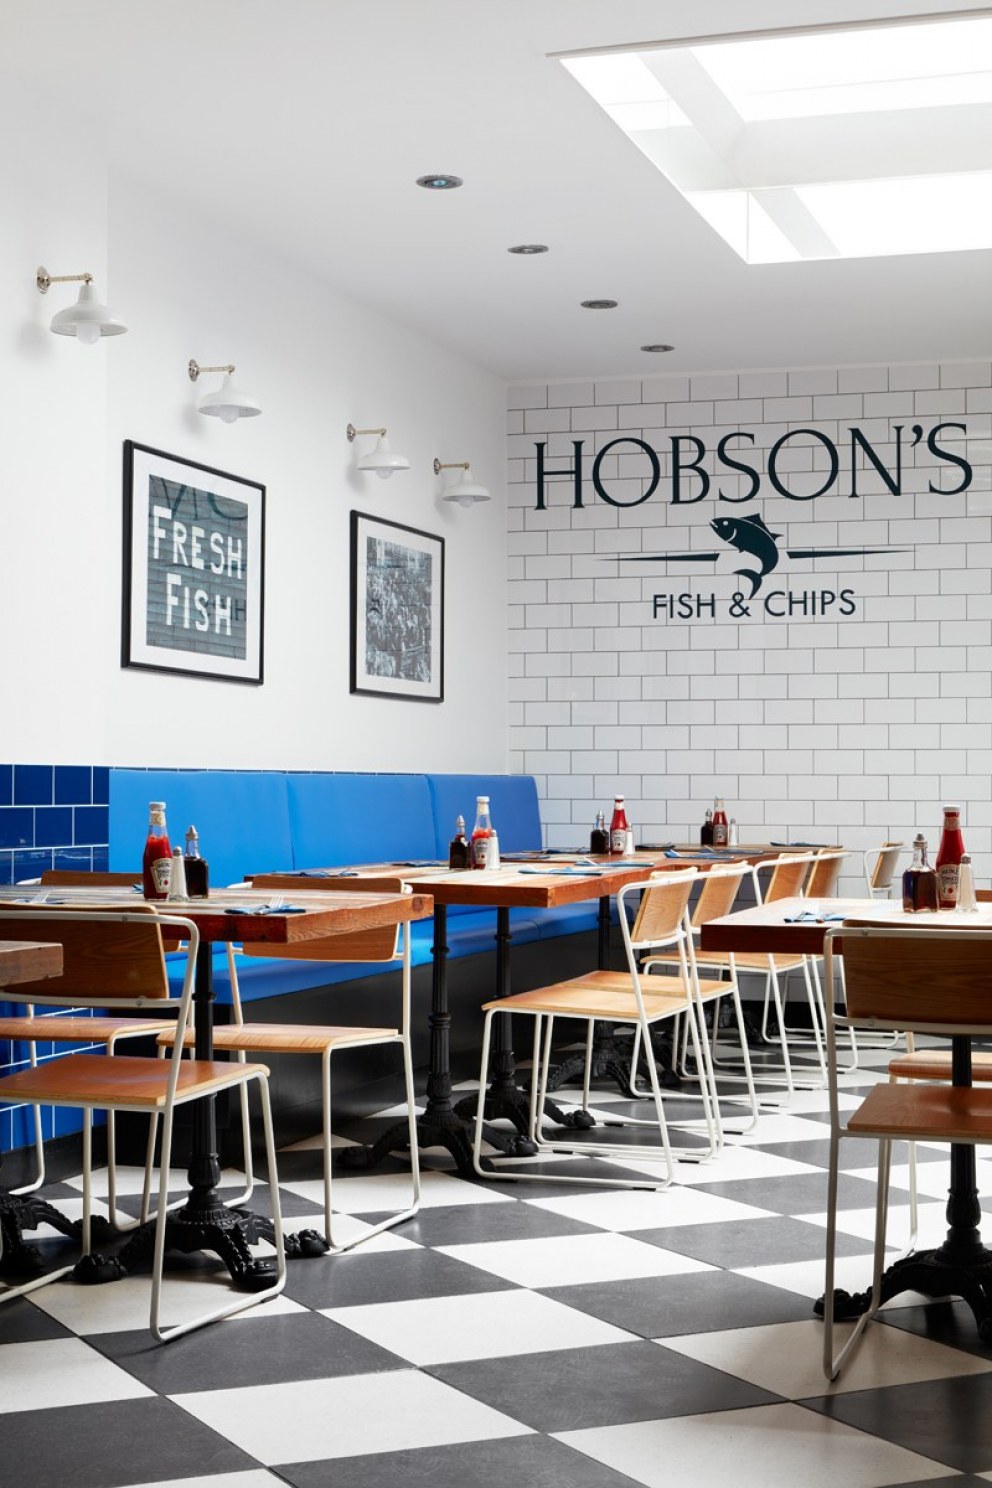 Hobson's Fish and Chips | Hobson's Fish and Chips | Interior Designers